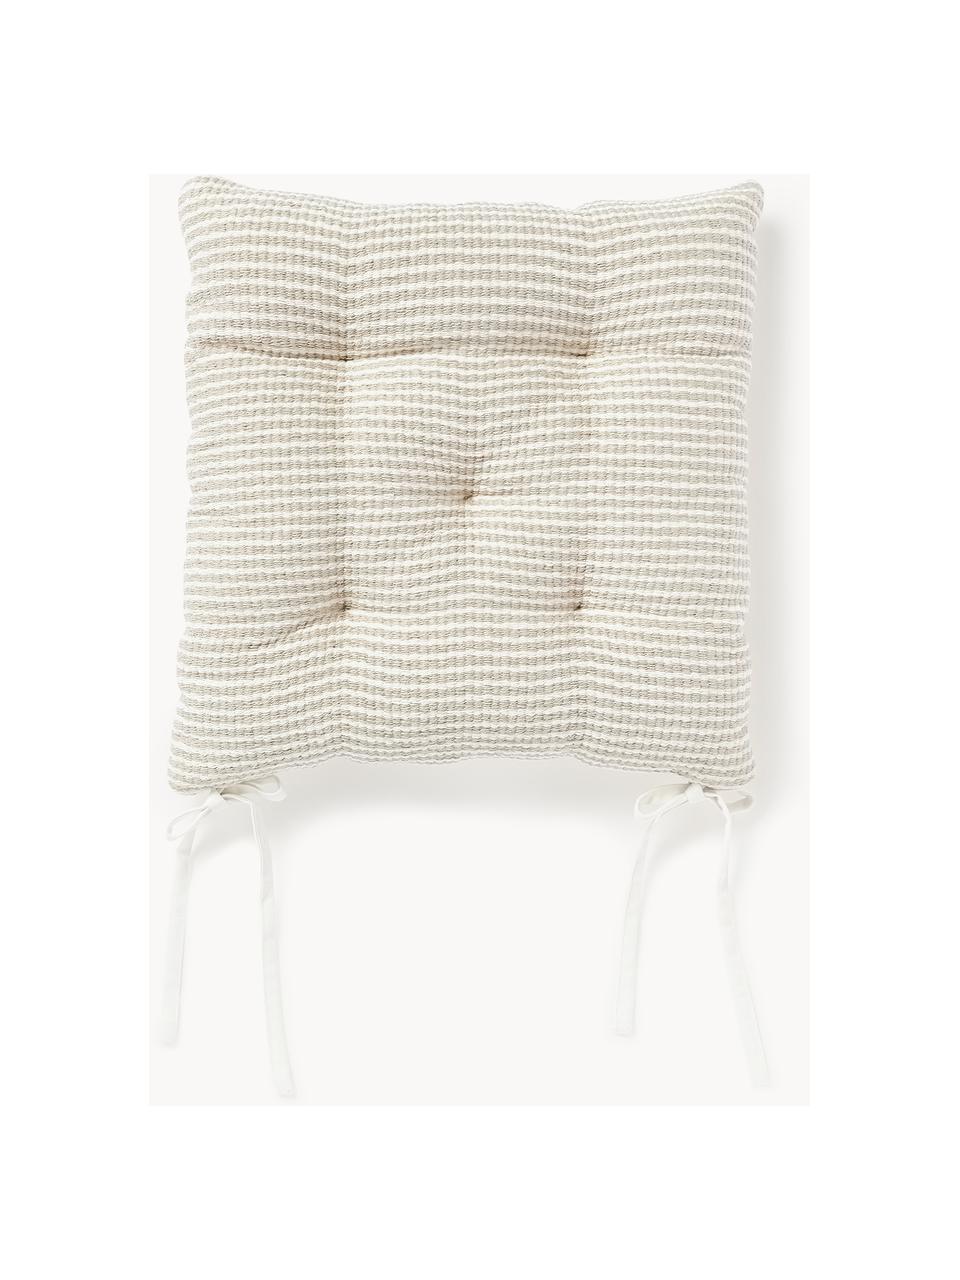 Coussins d'assise en coton rayé Silla, 2 pièces, Beige clair, blanc, larg. 40 x long. 40 cm